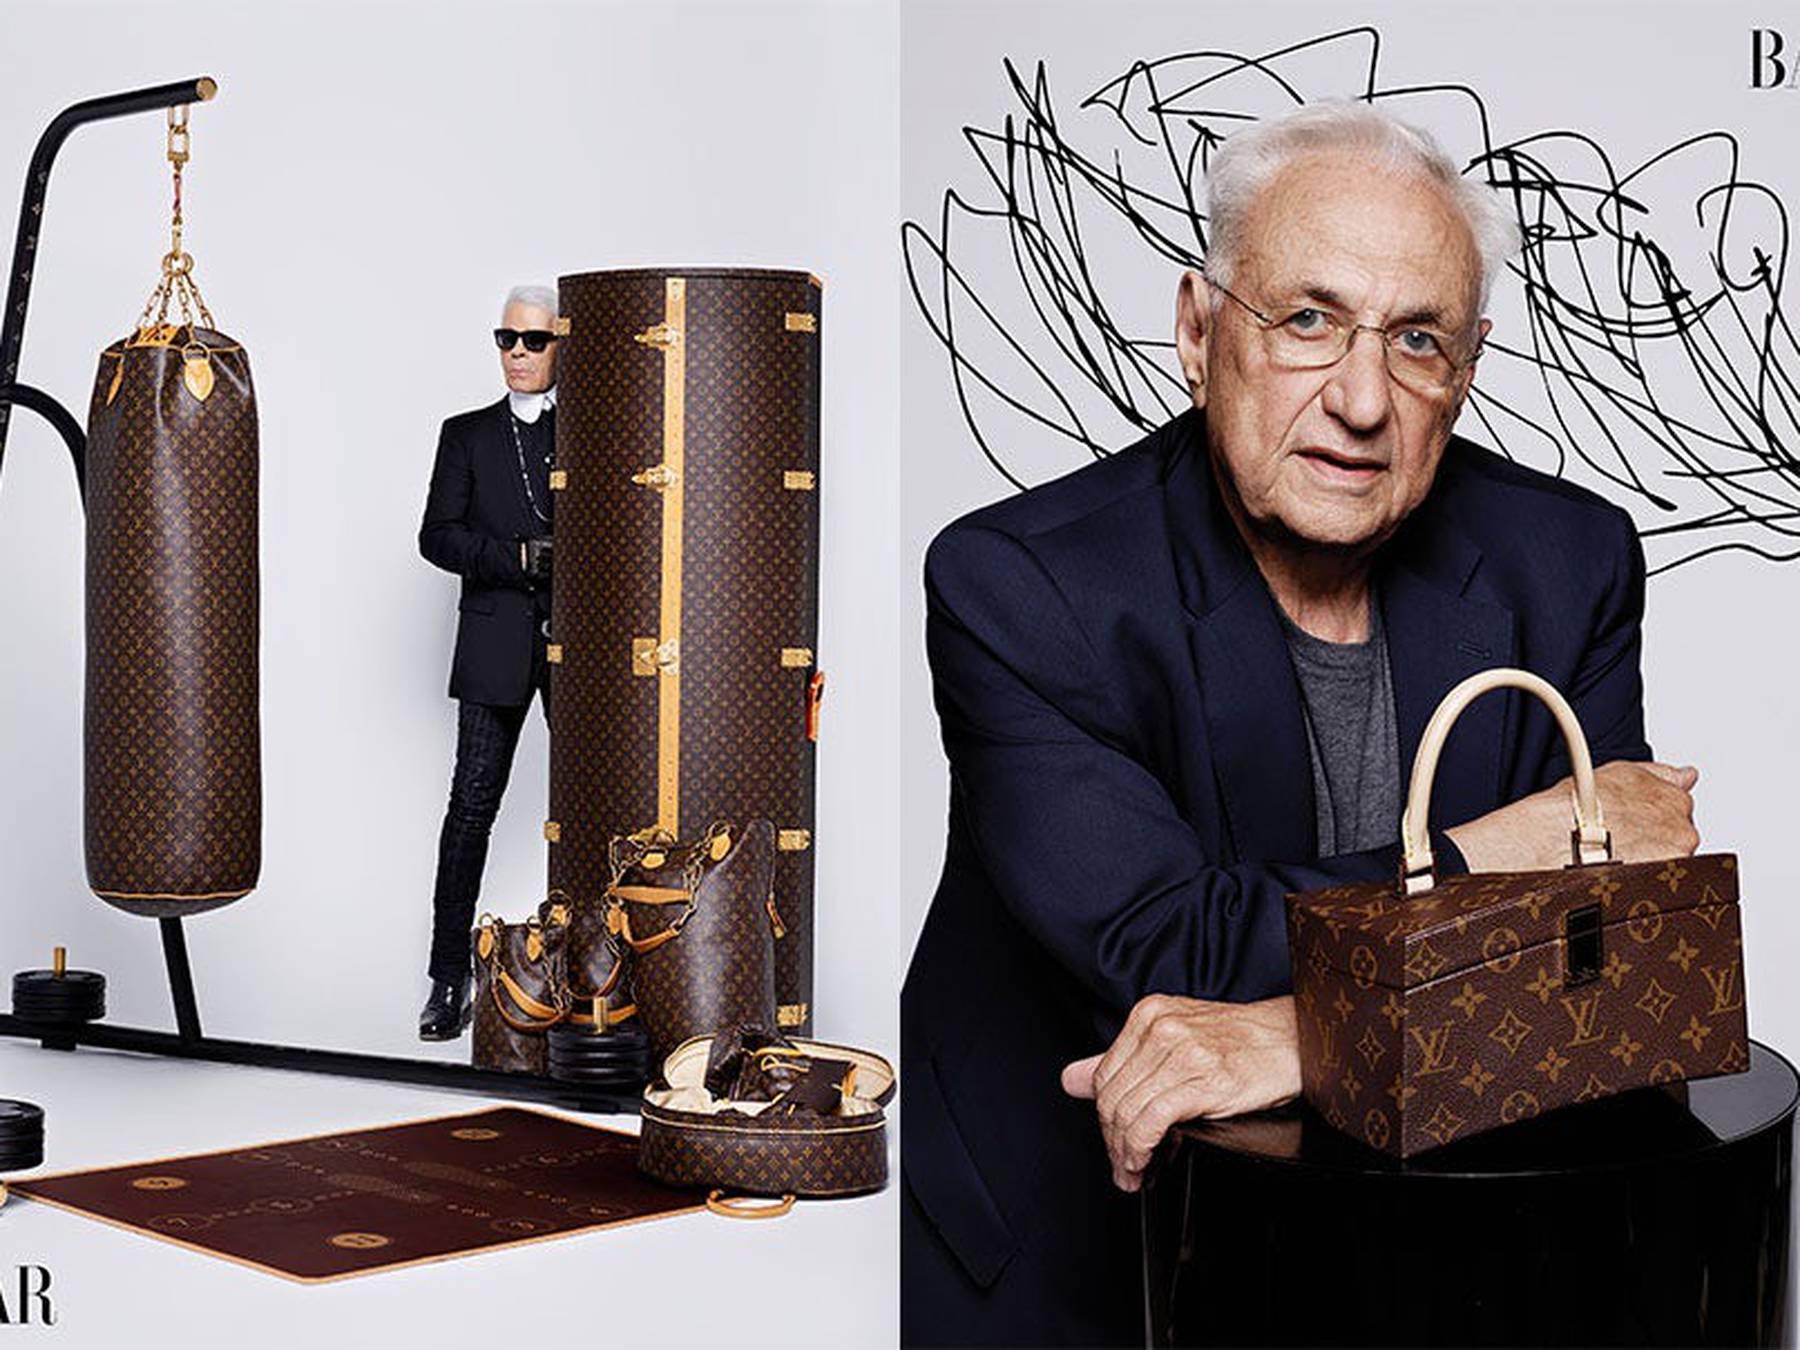 Louis Vuitton y los símbolos de Kenzo de una nueva diversidad, Infrastructure-intelligenceShops Revival